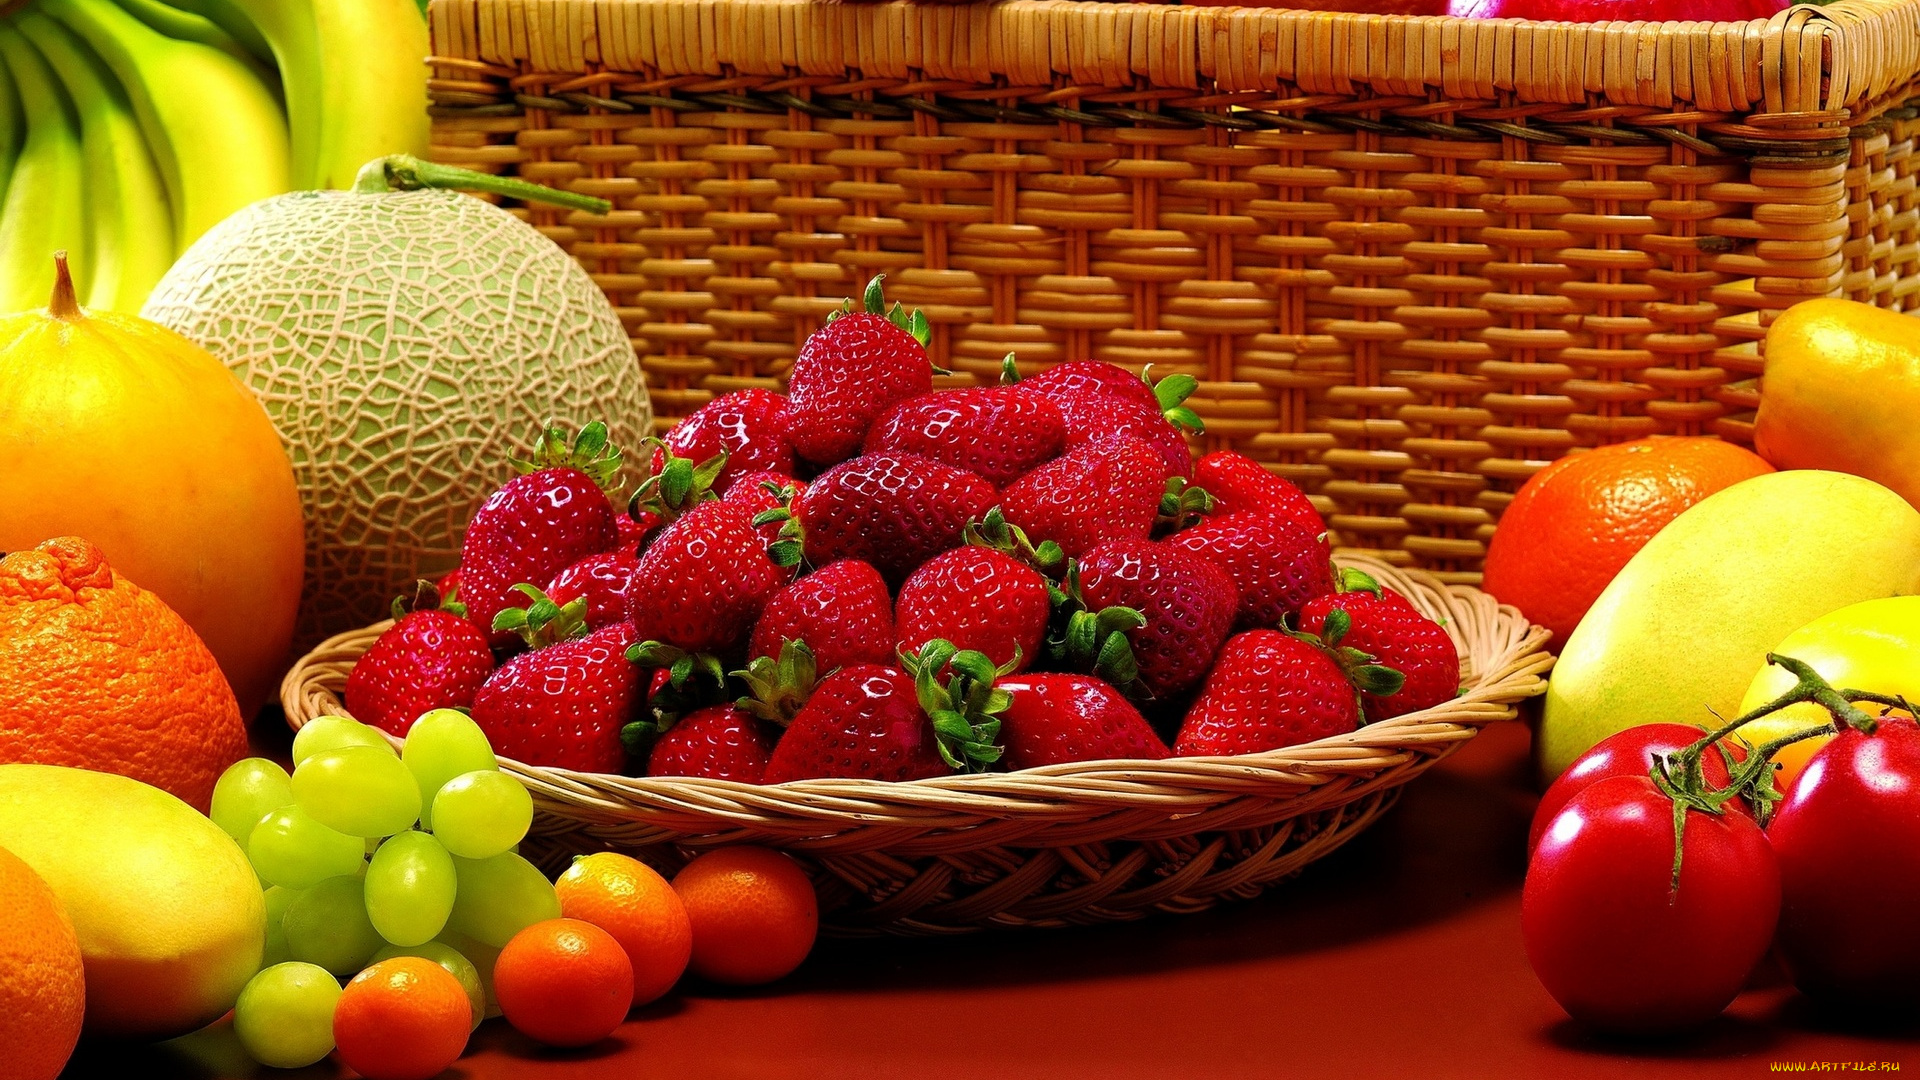 еда, фрукты, , ягоды, овощи, корзина, ягоды, помидоры, дыня, виноград, клубника, мандарины